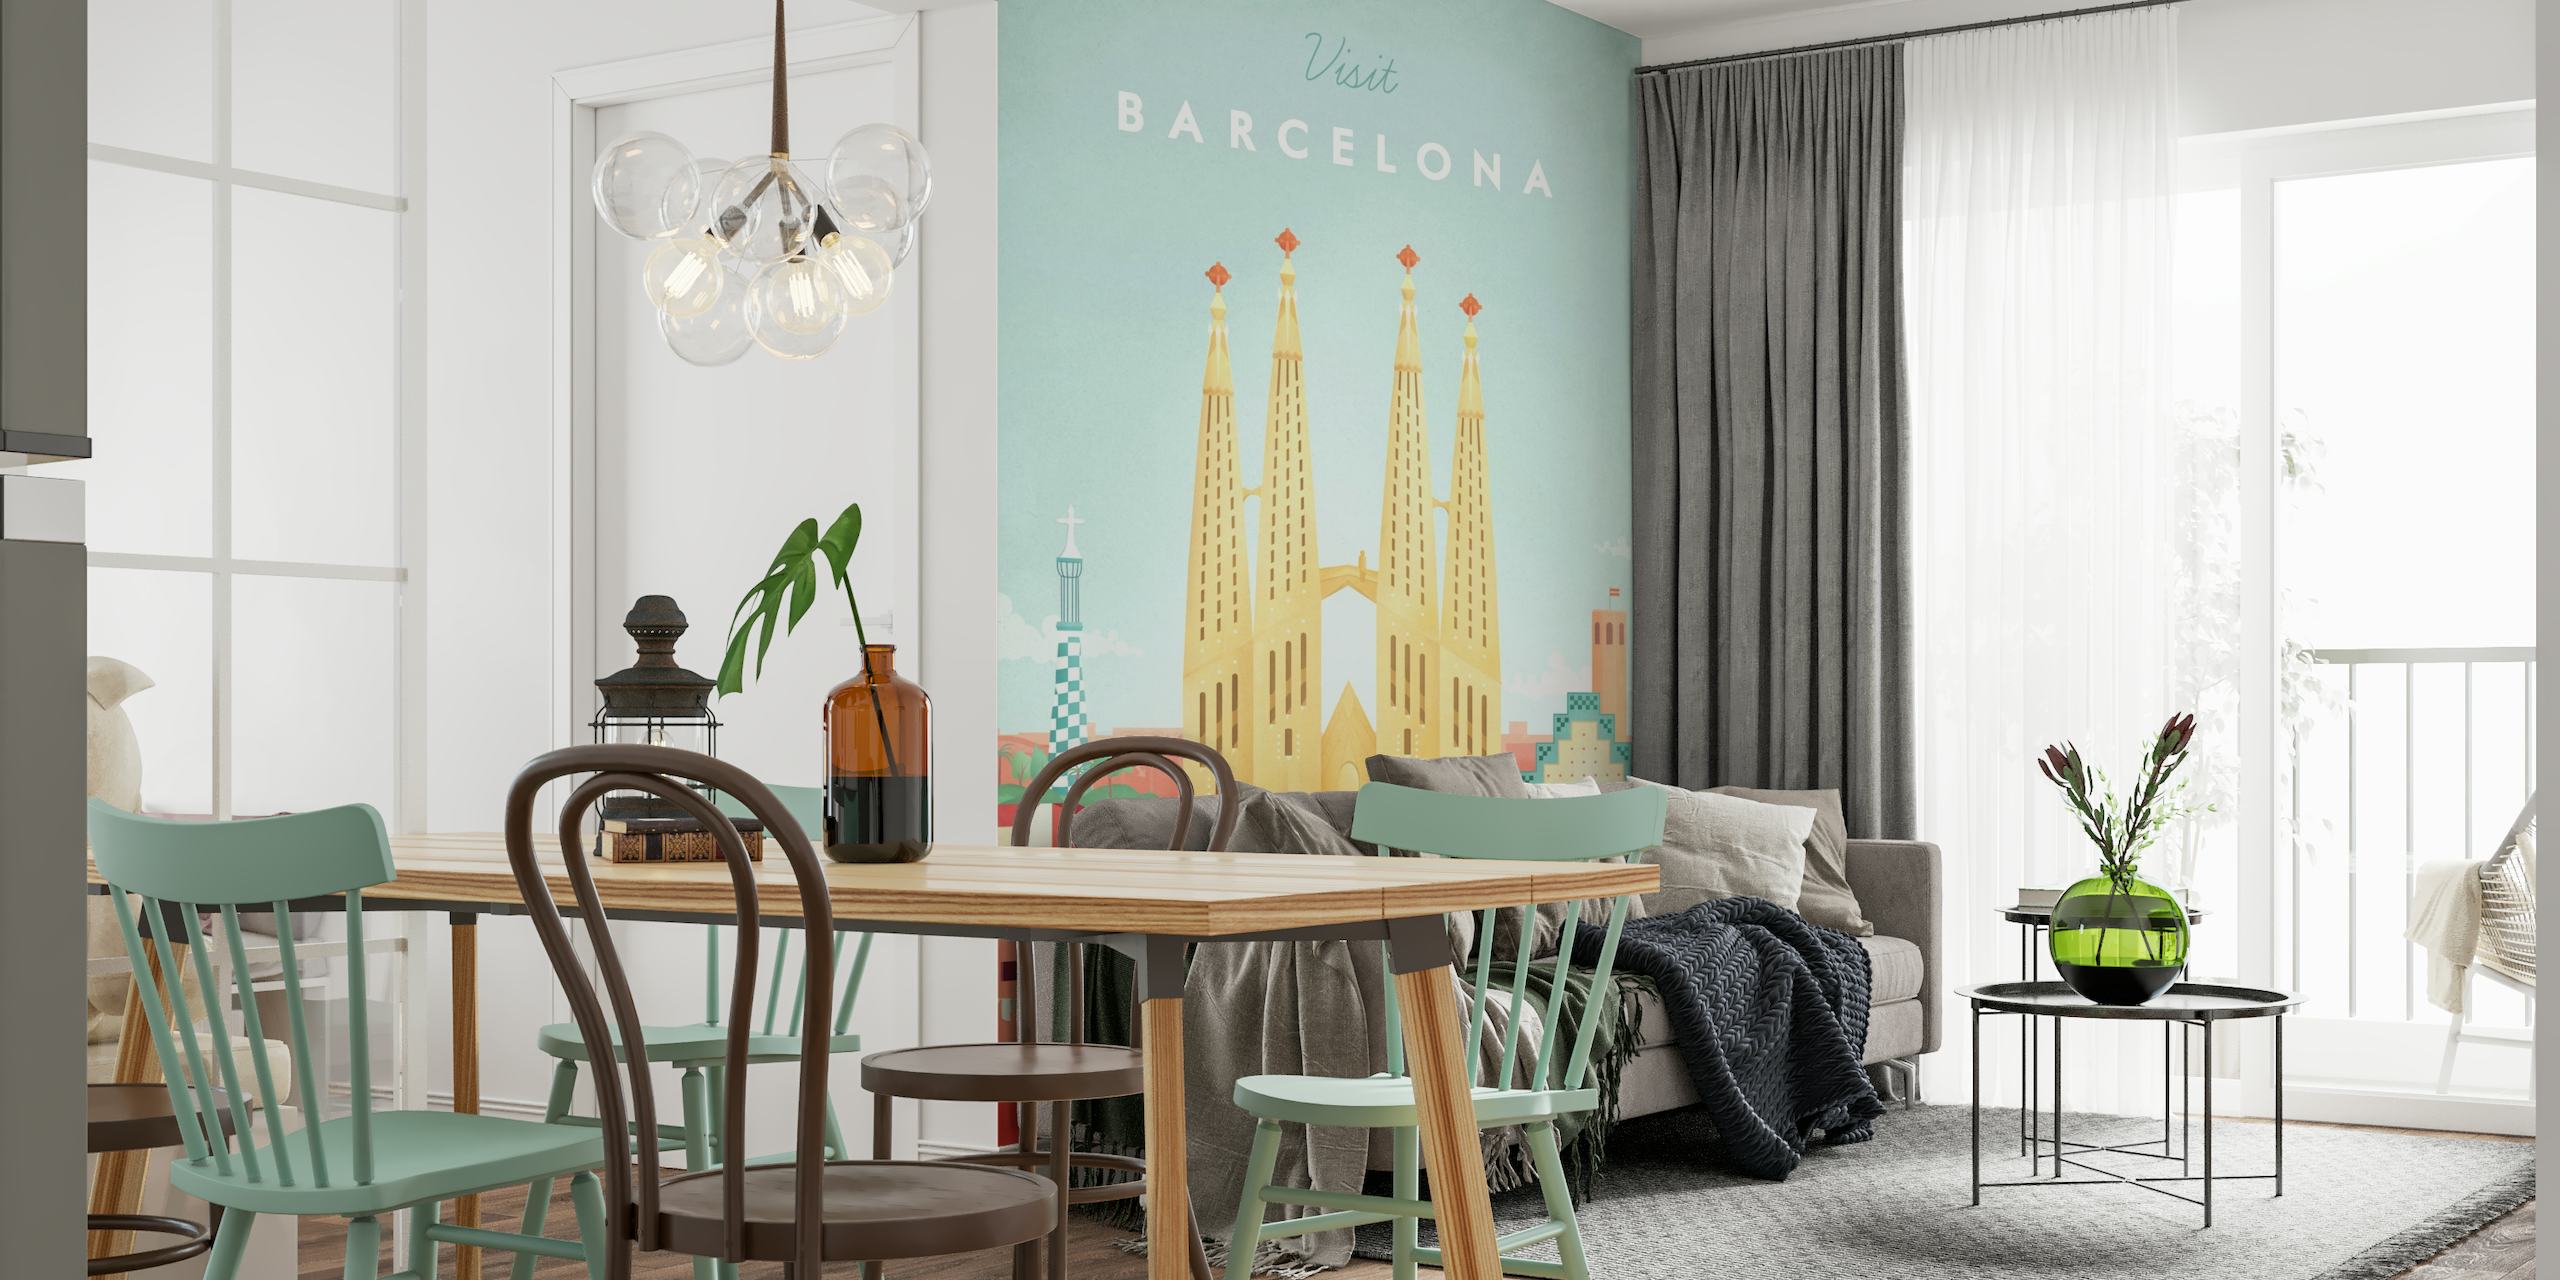 Barcelona Travel Poster wallpaper